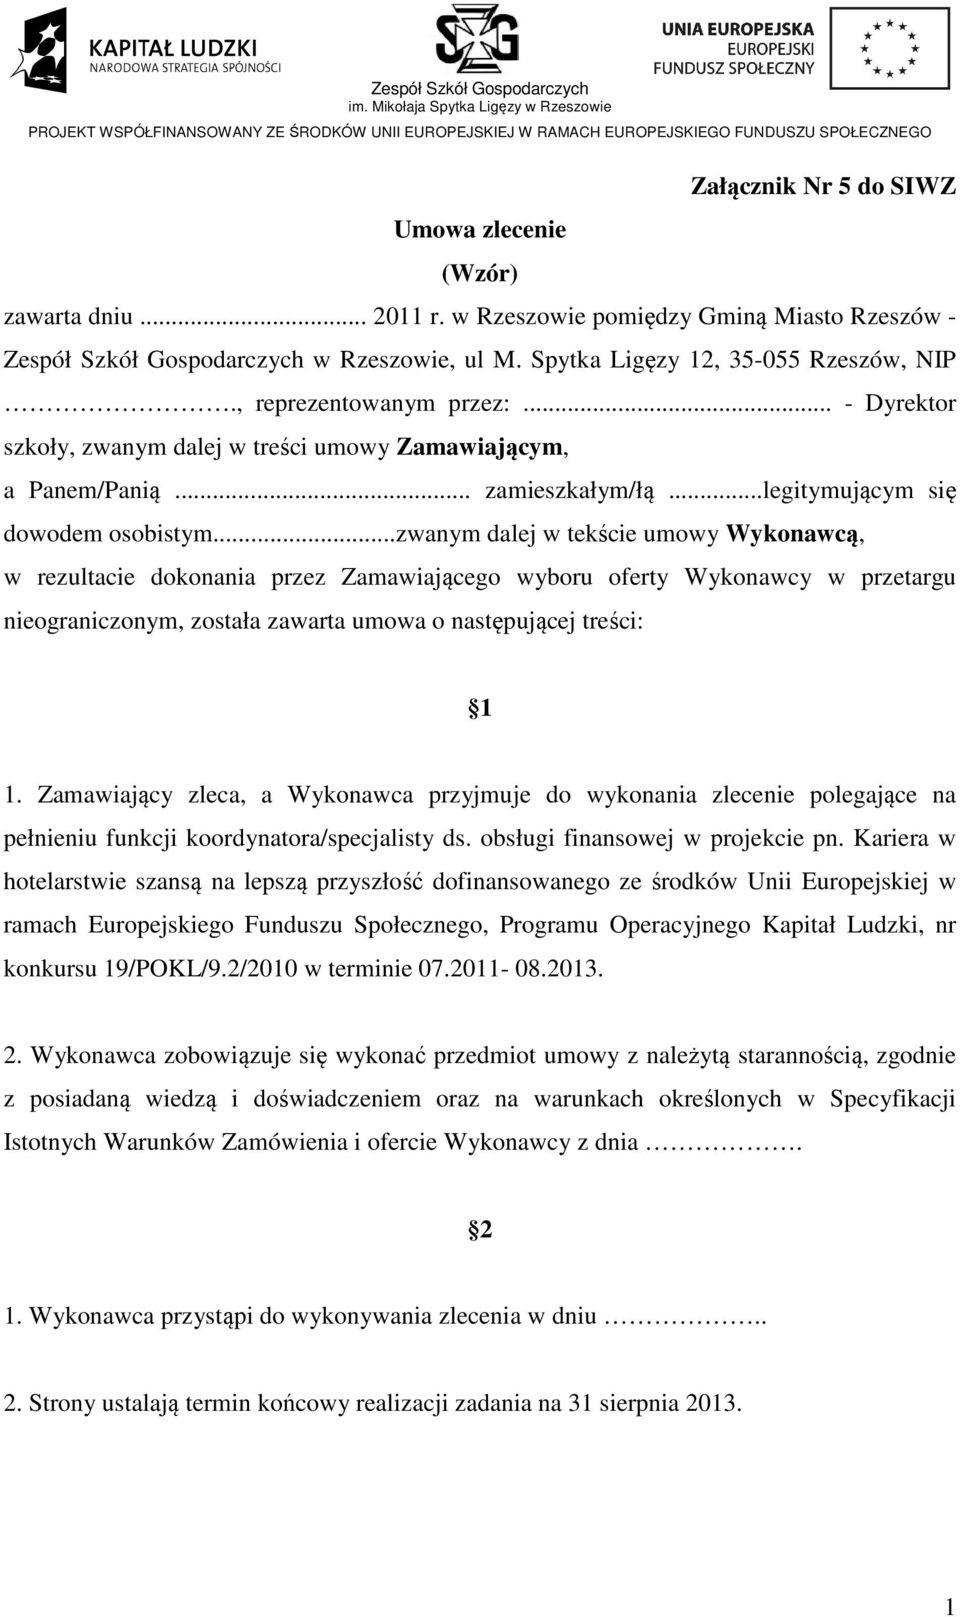 Umowa zlecenie (Wzór) - PDF Free Download